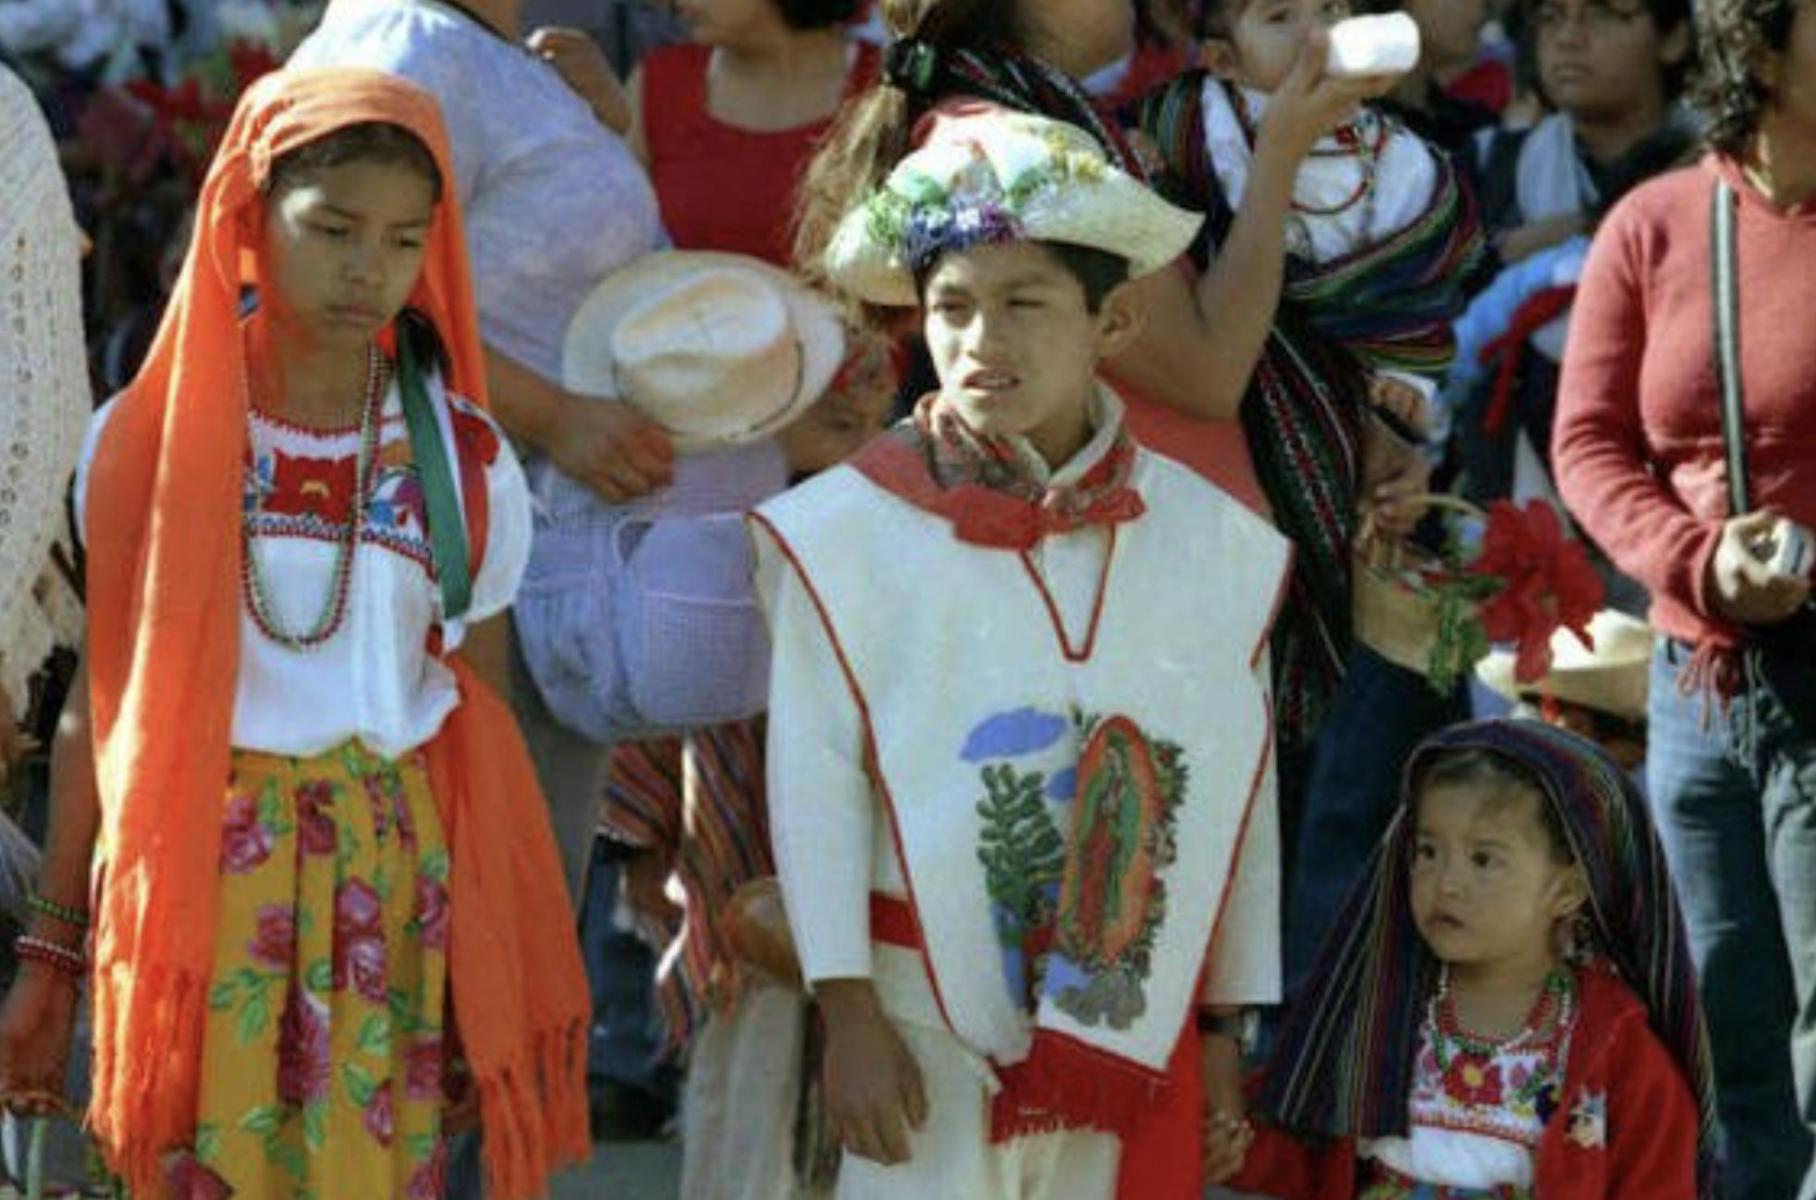 Matrimonio infantil en México